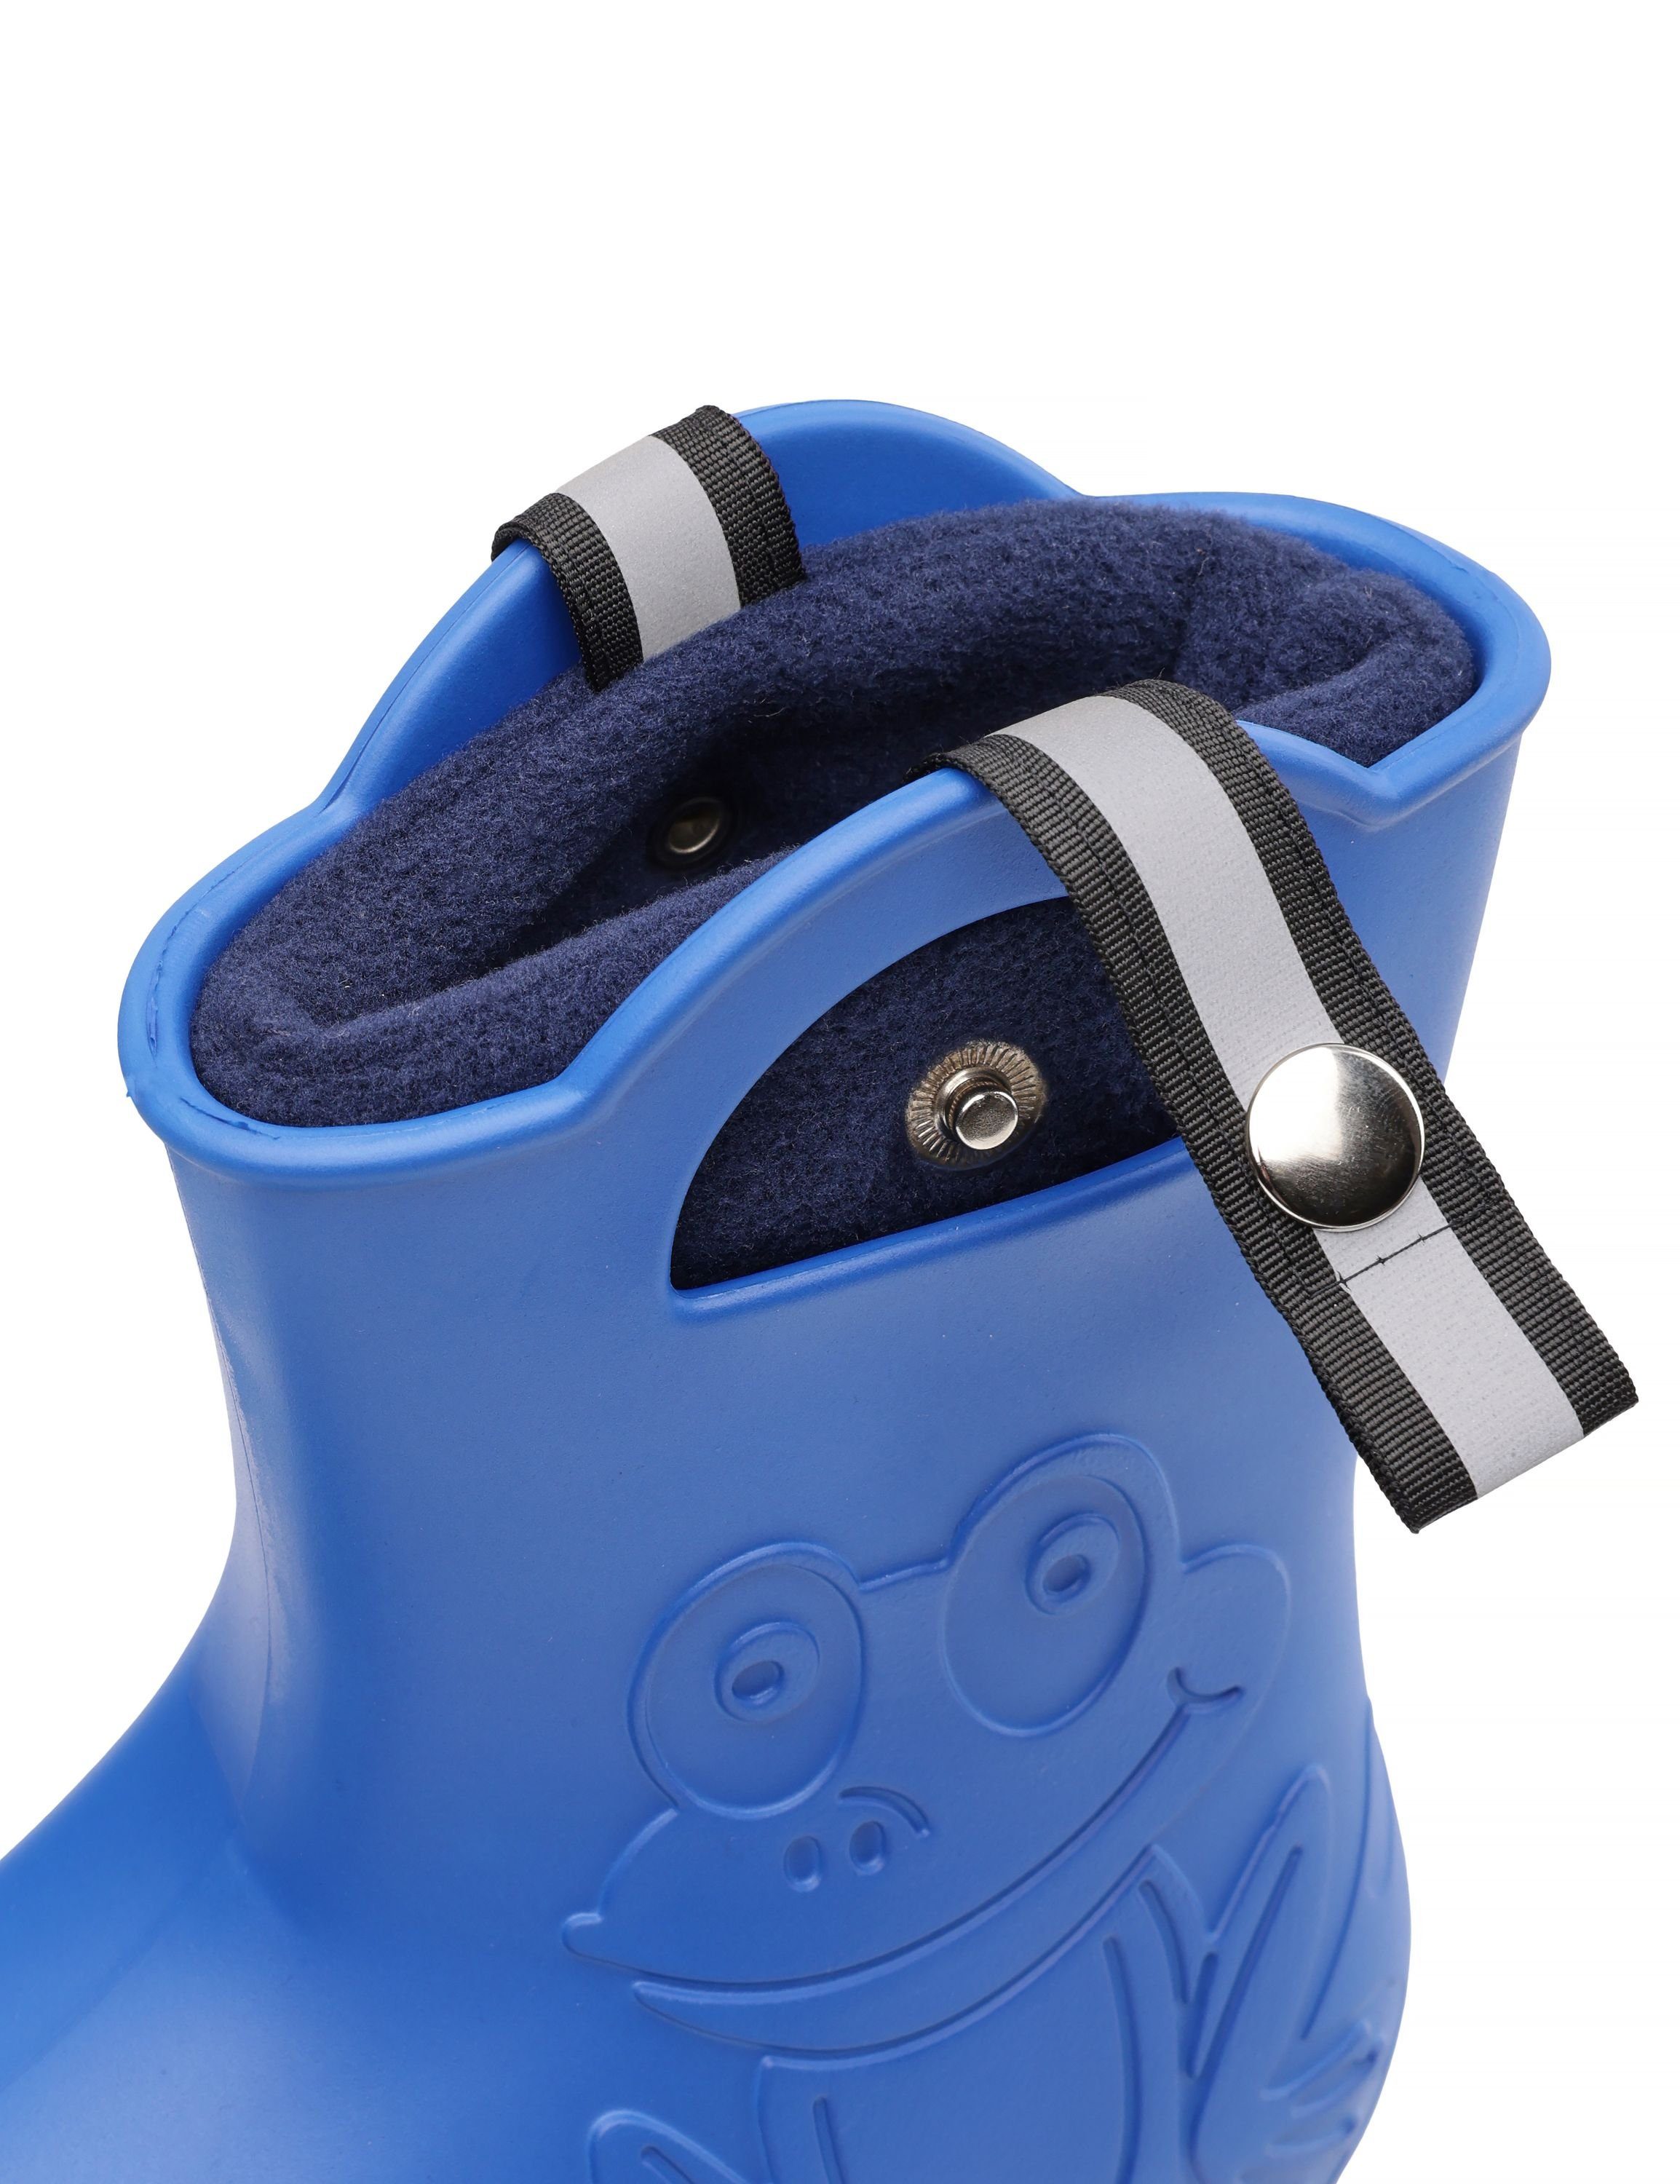 Gummistiefel Schaftformer für Socken Wärmende Regenstiefel Marineblau Stiefelsocken Kinder Ladeheid